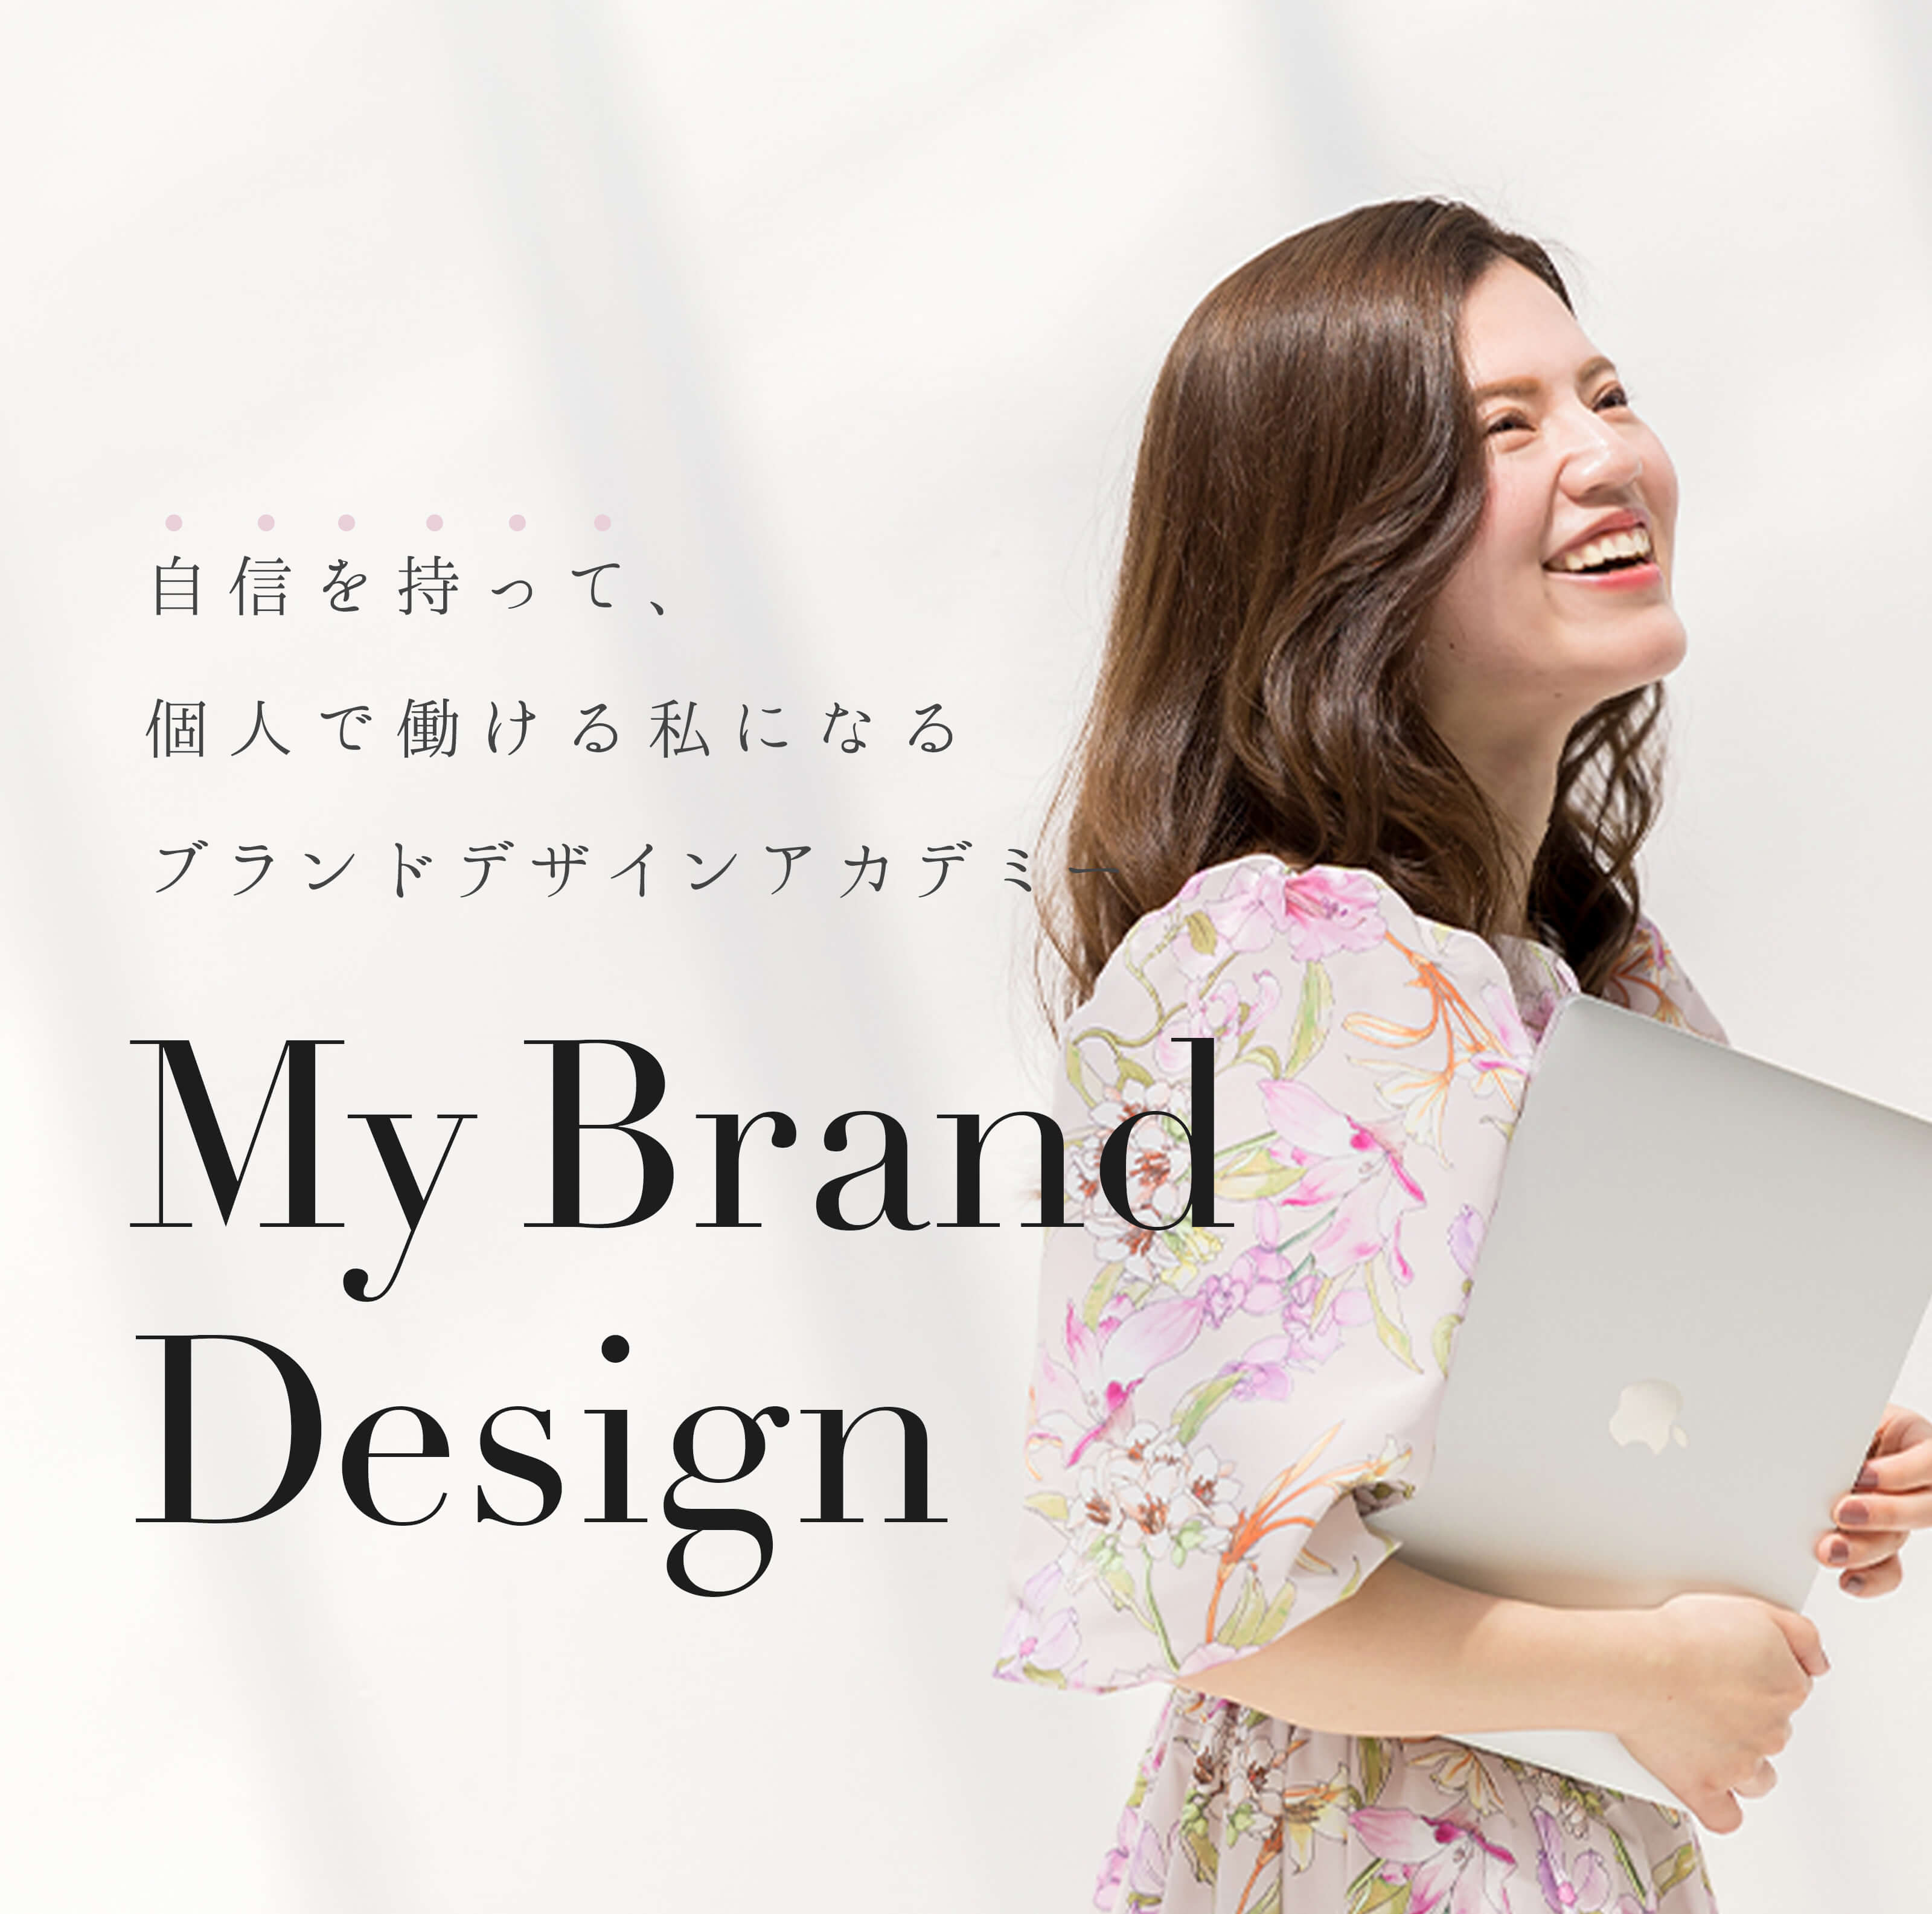 もう迷わない、「私らしい働き方」を叶えよう。自信をもって、個人で働ける私になるブランドデザインアカデミー「My Brand Design」